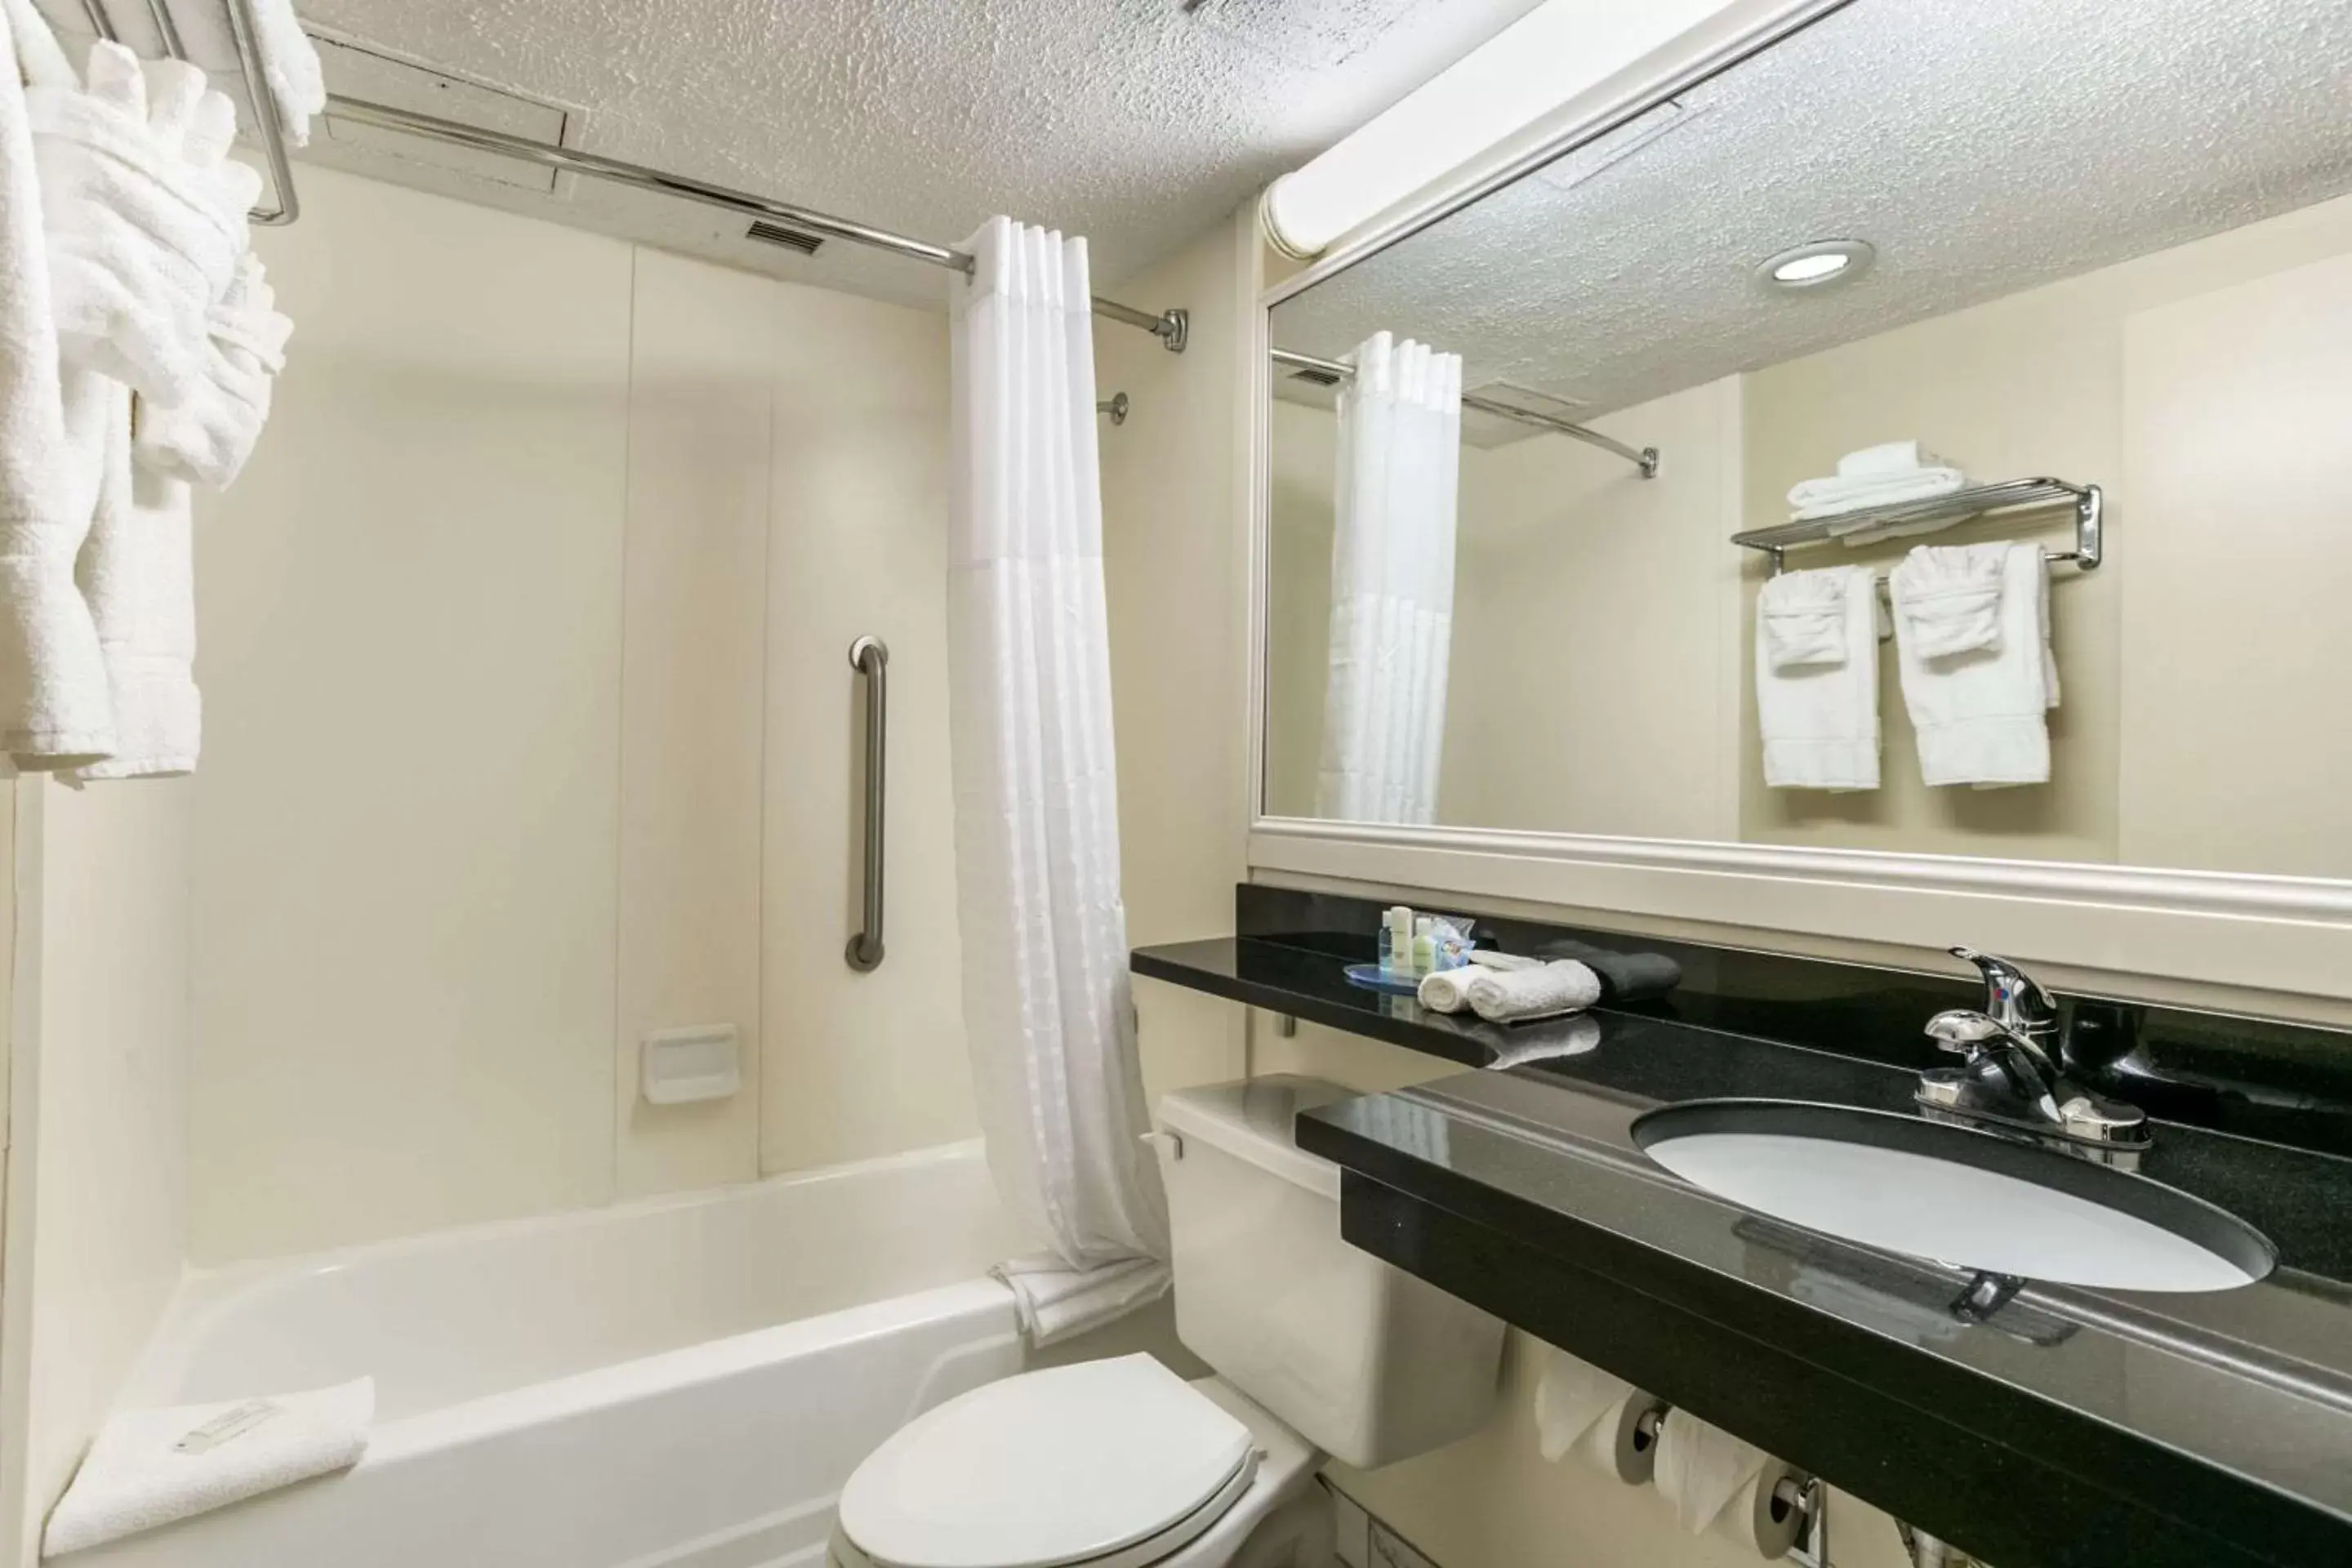 Bedroom, Bathroom in Clarion Hotel BWI Airport Arundel Mills